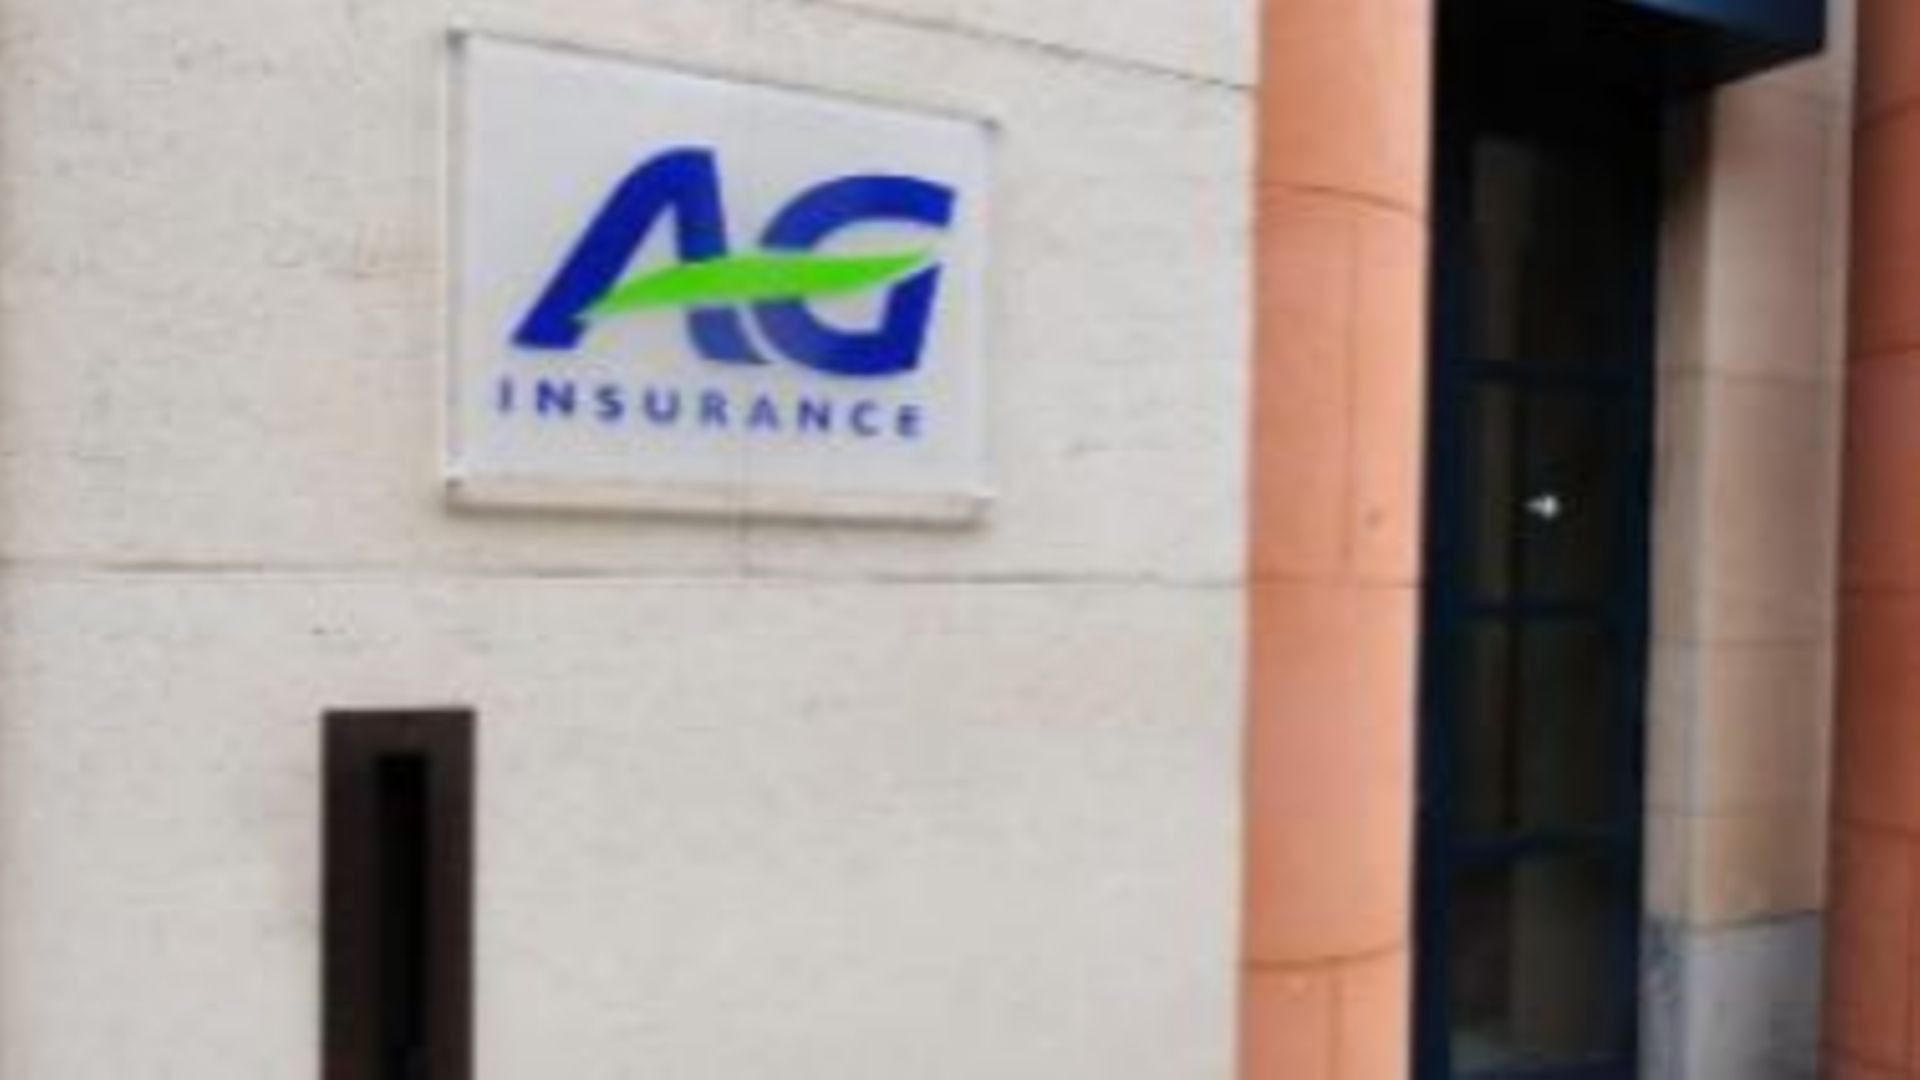 AG baisse les taux des assurance de groupe: les pensions complémentaires menacées? 